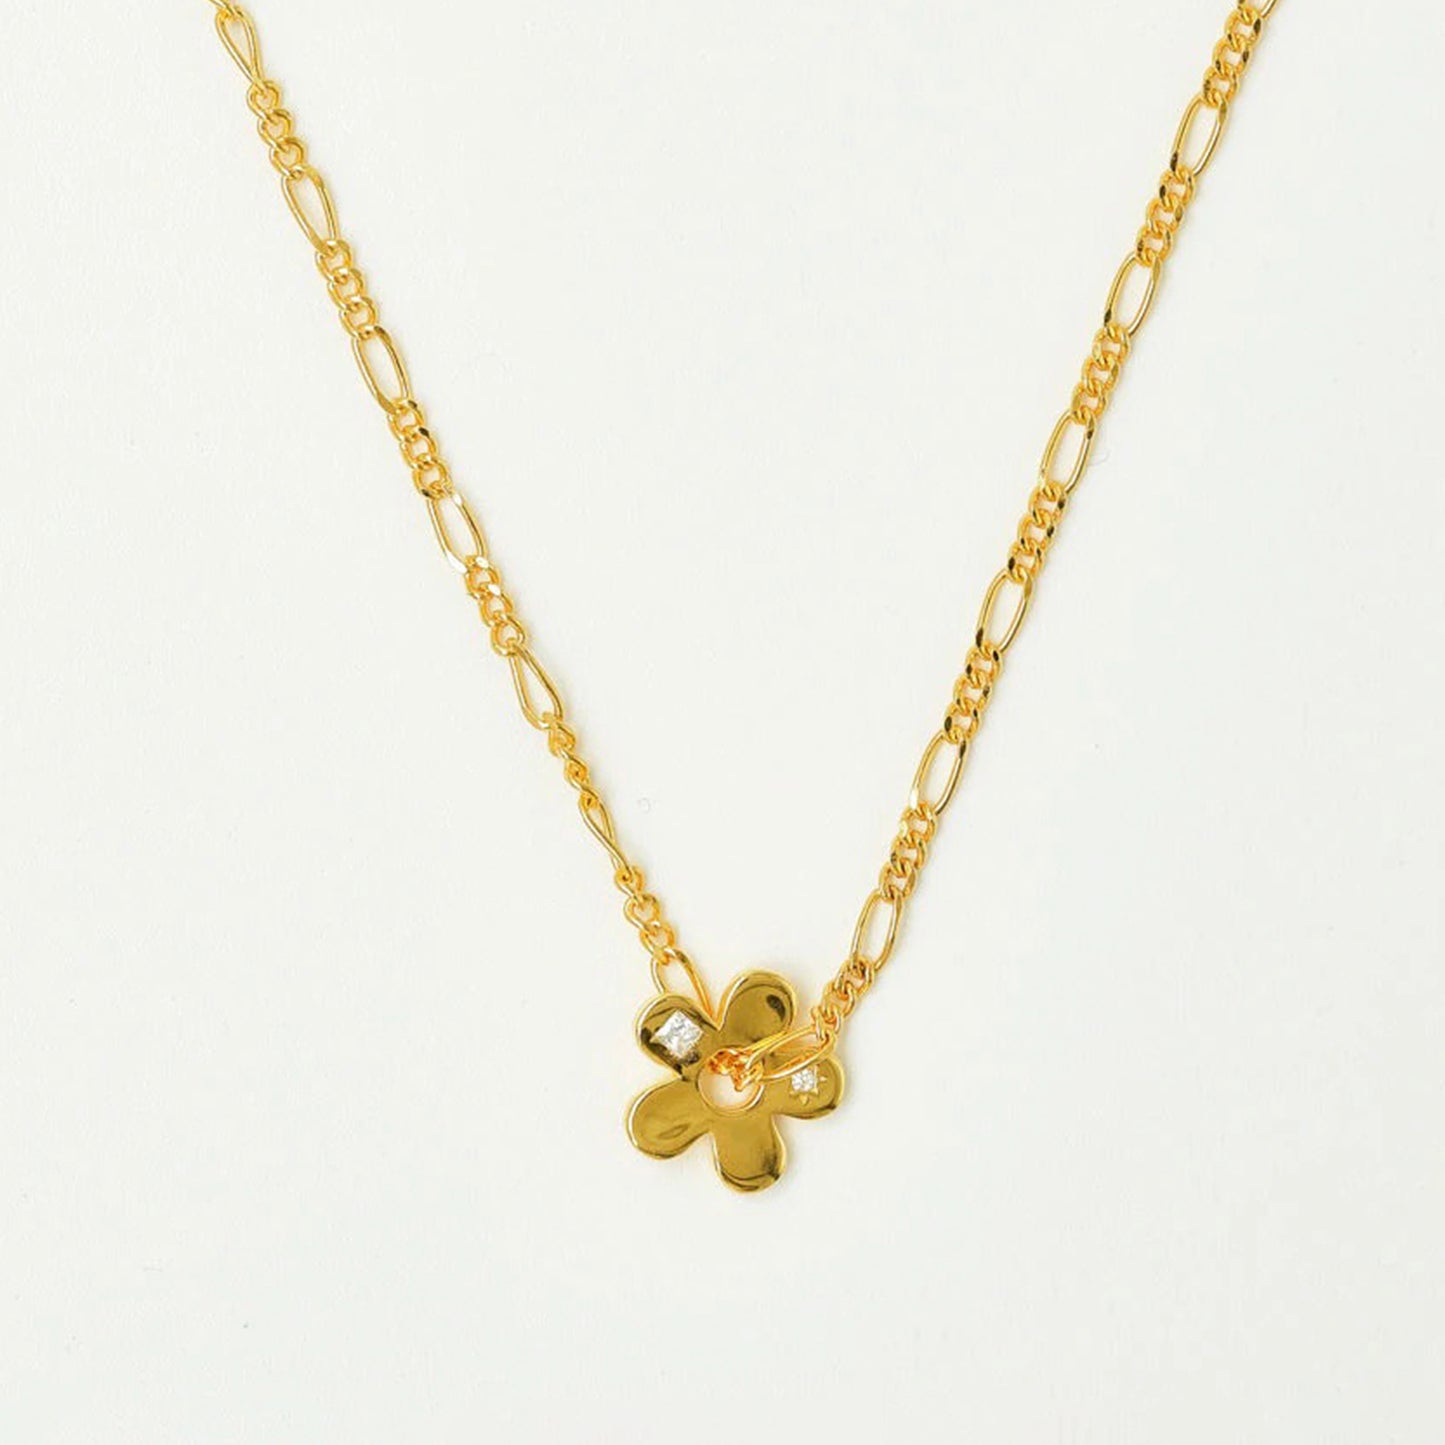 Brie Leon - 925 Signature Flower Pendant Necklace - Gold/Clear